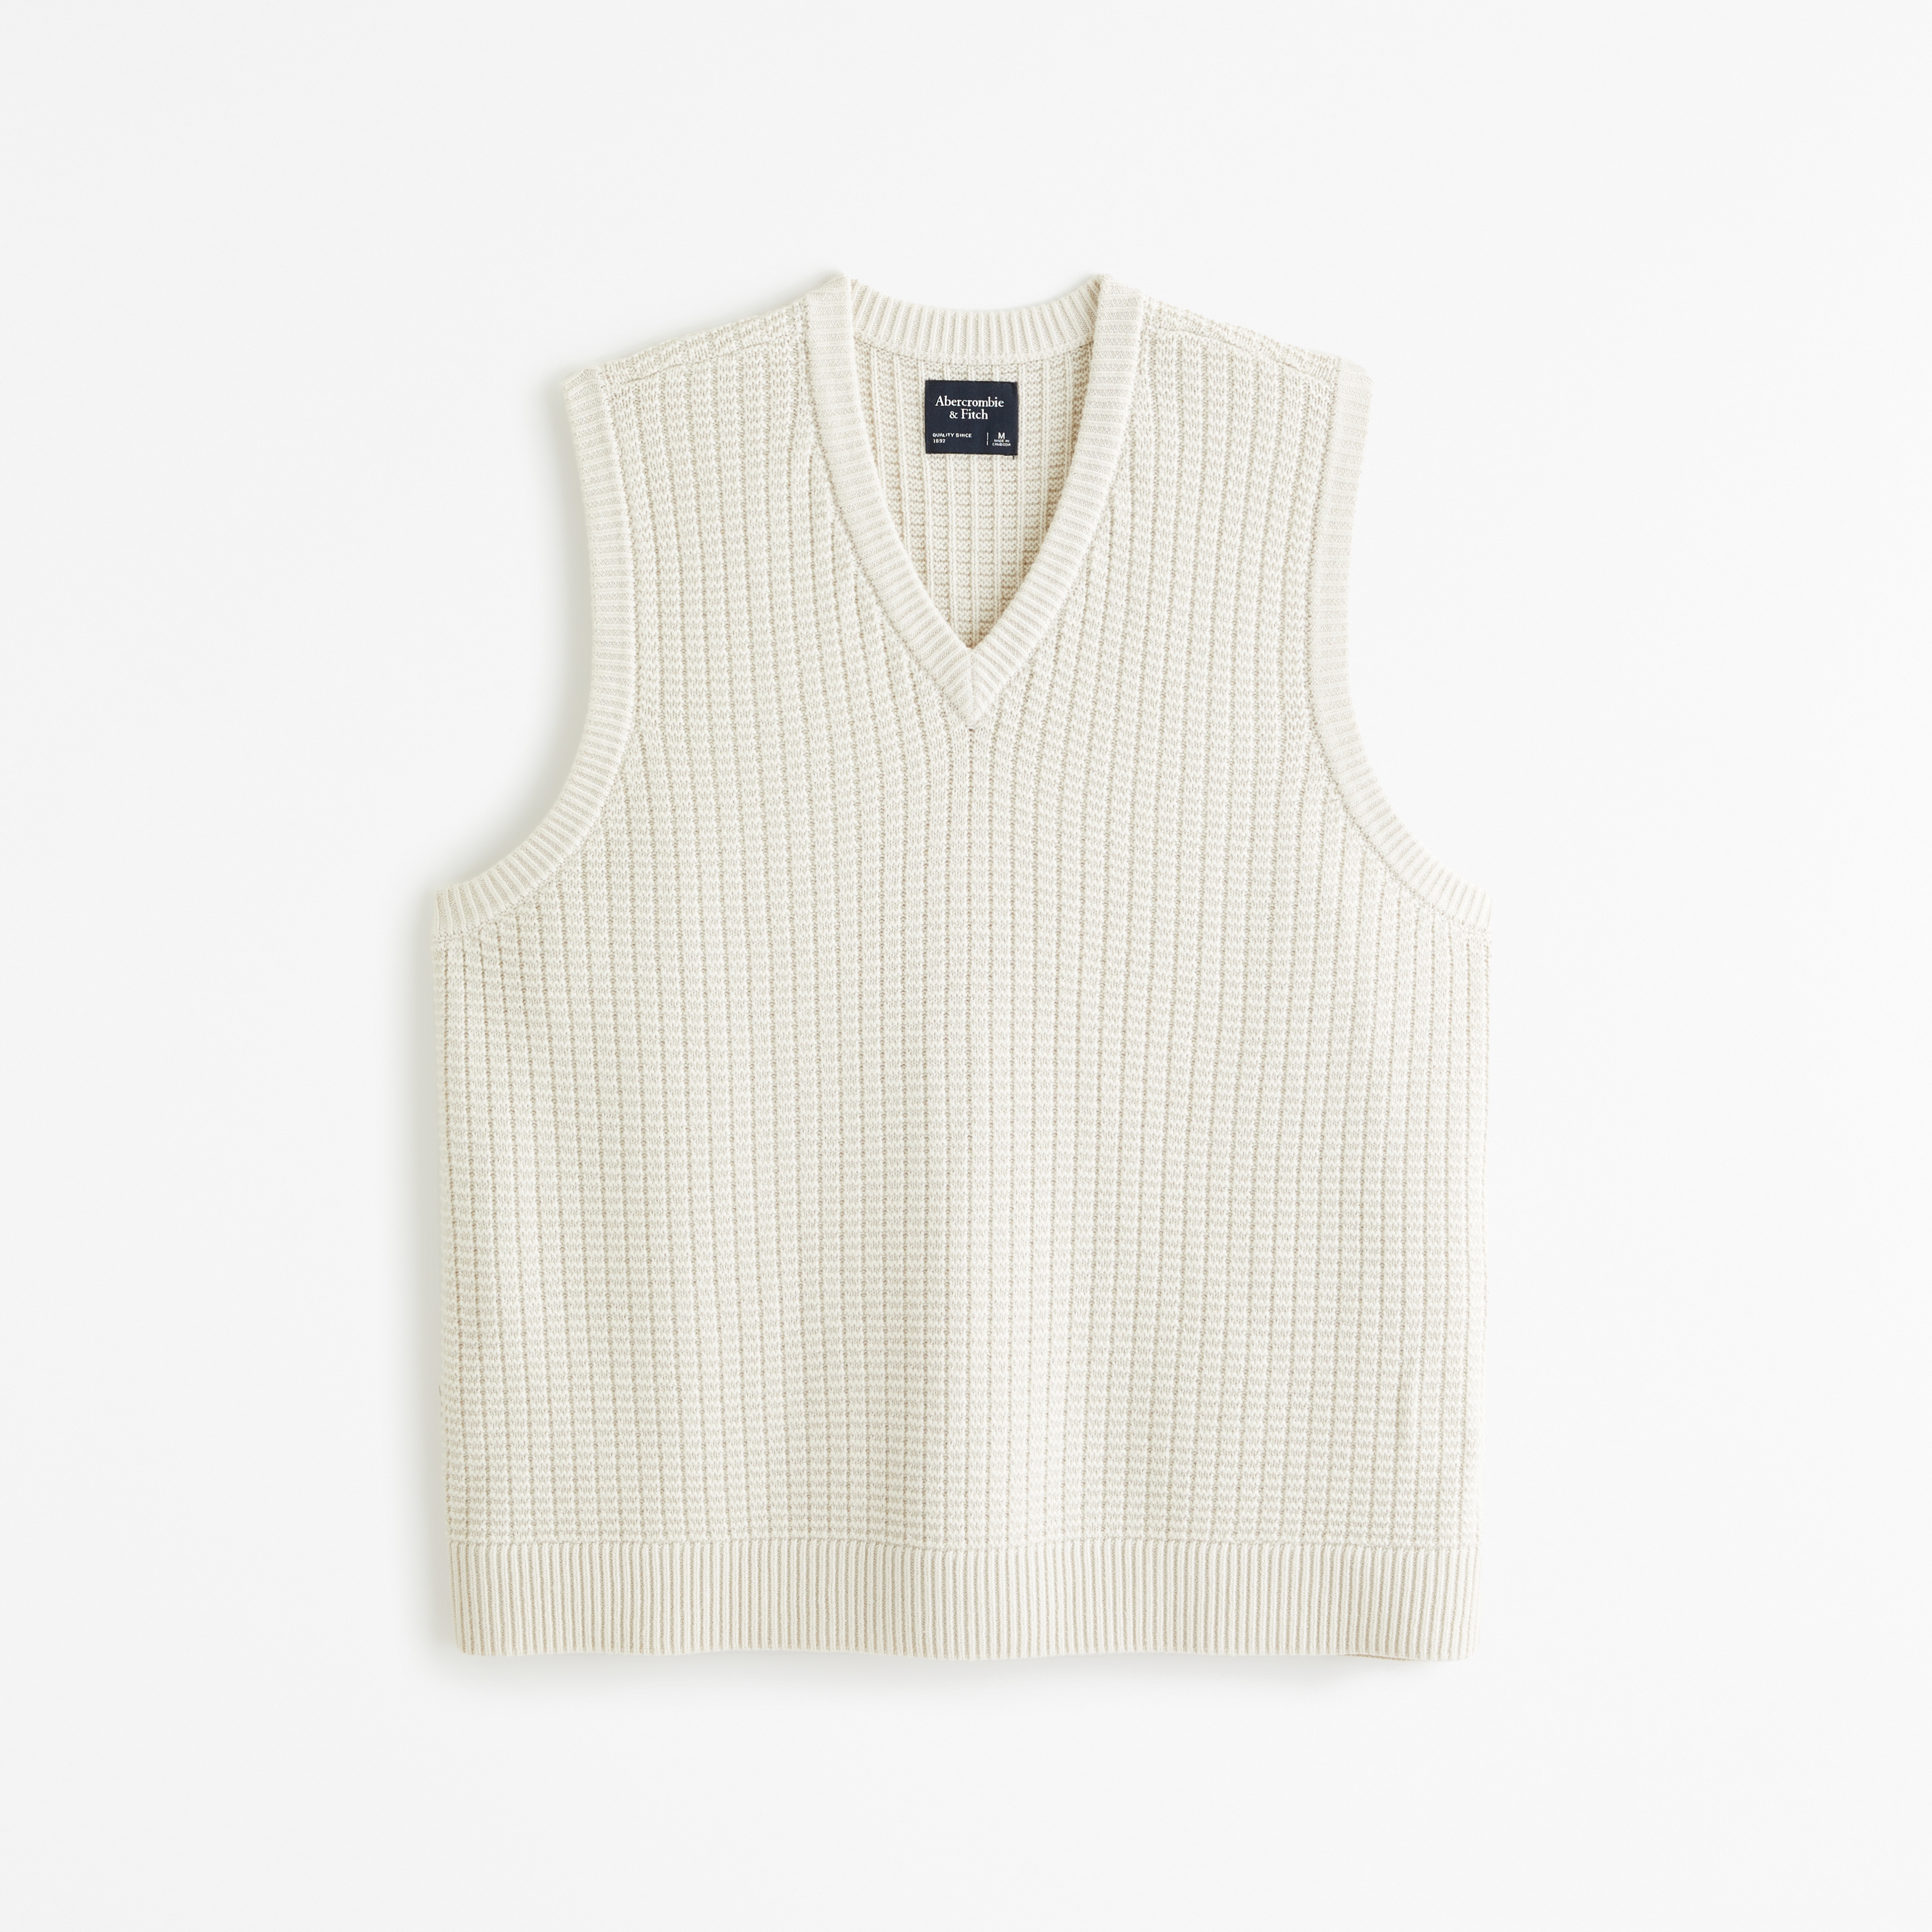 Oversized Stitchy Sweater Vest